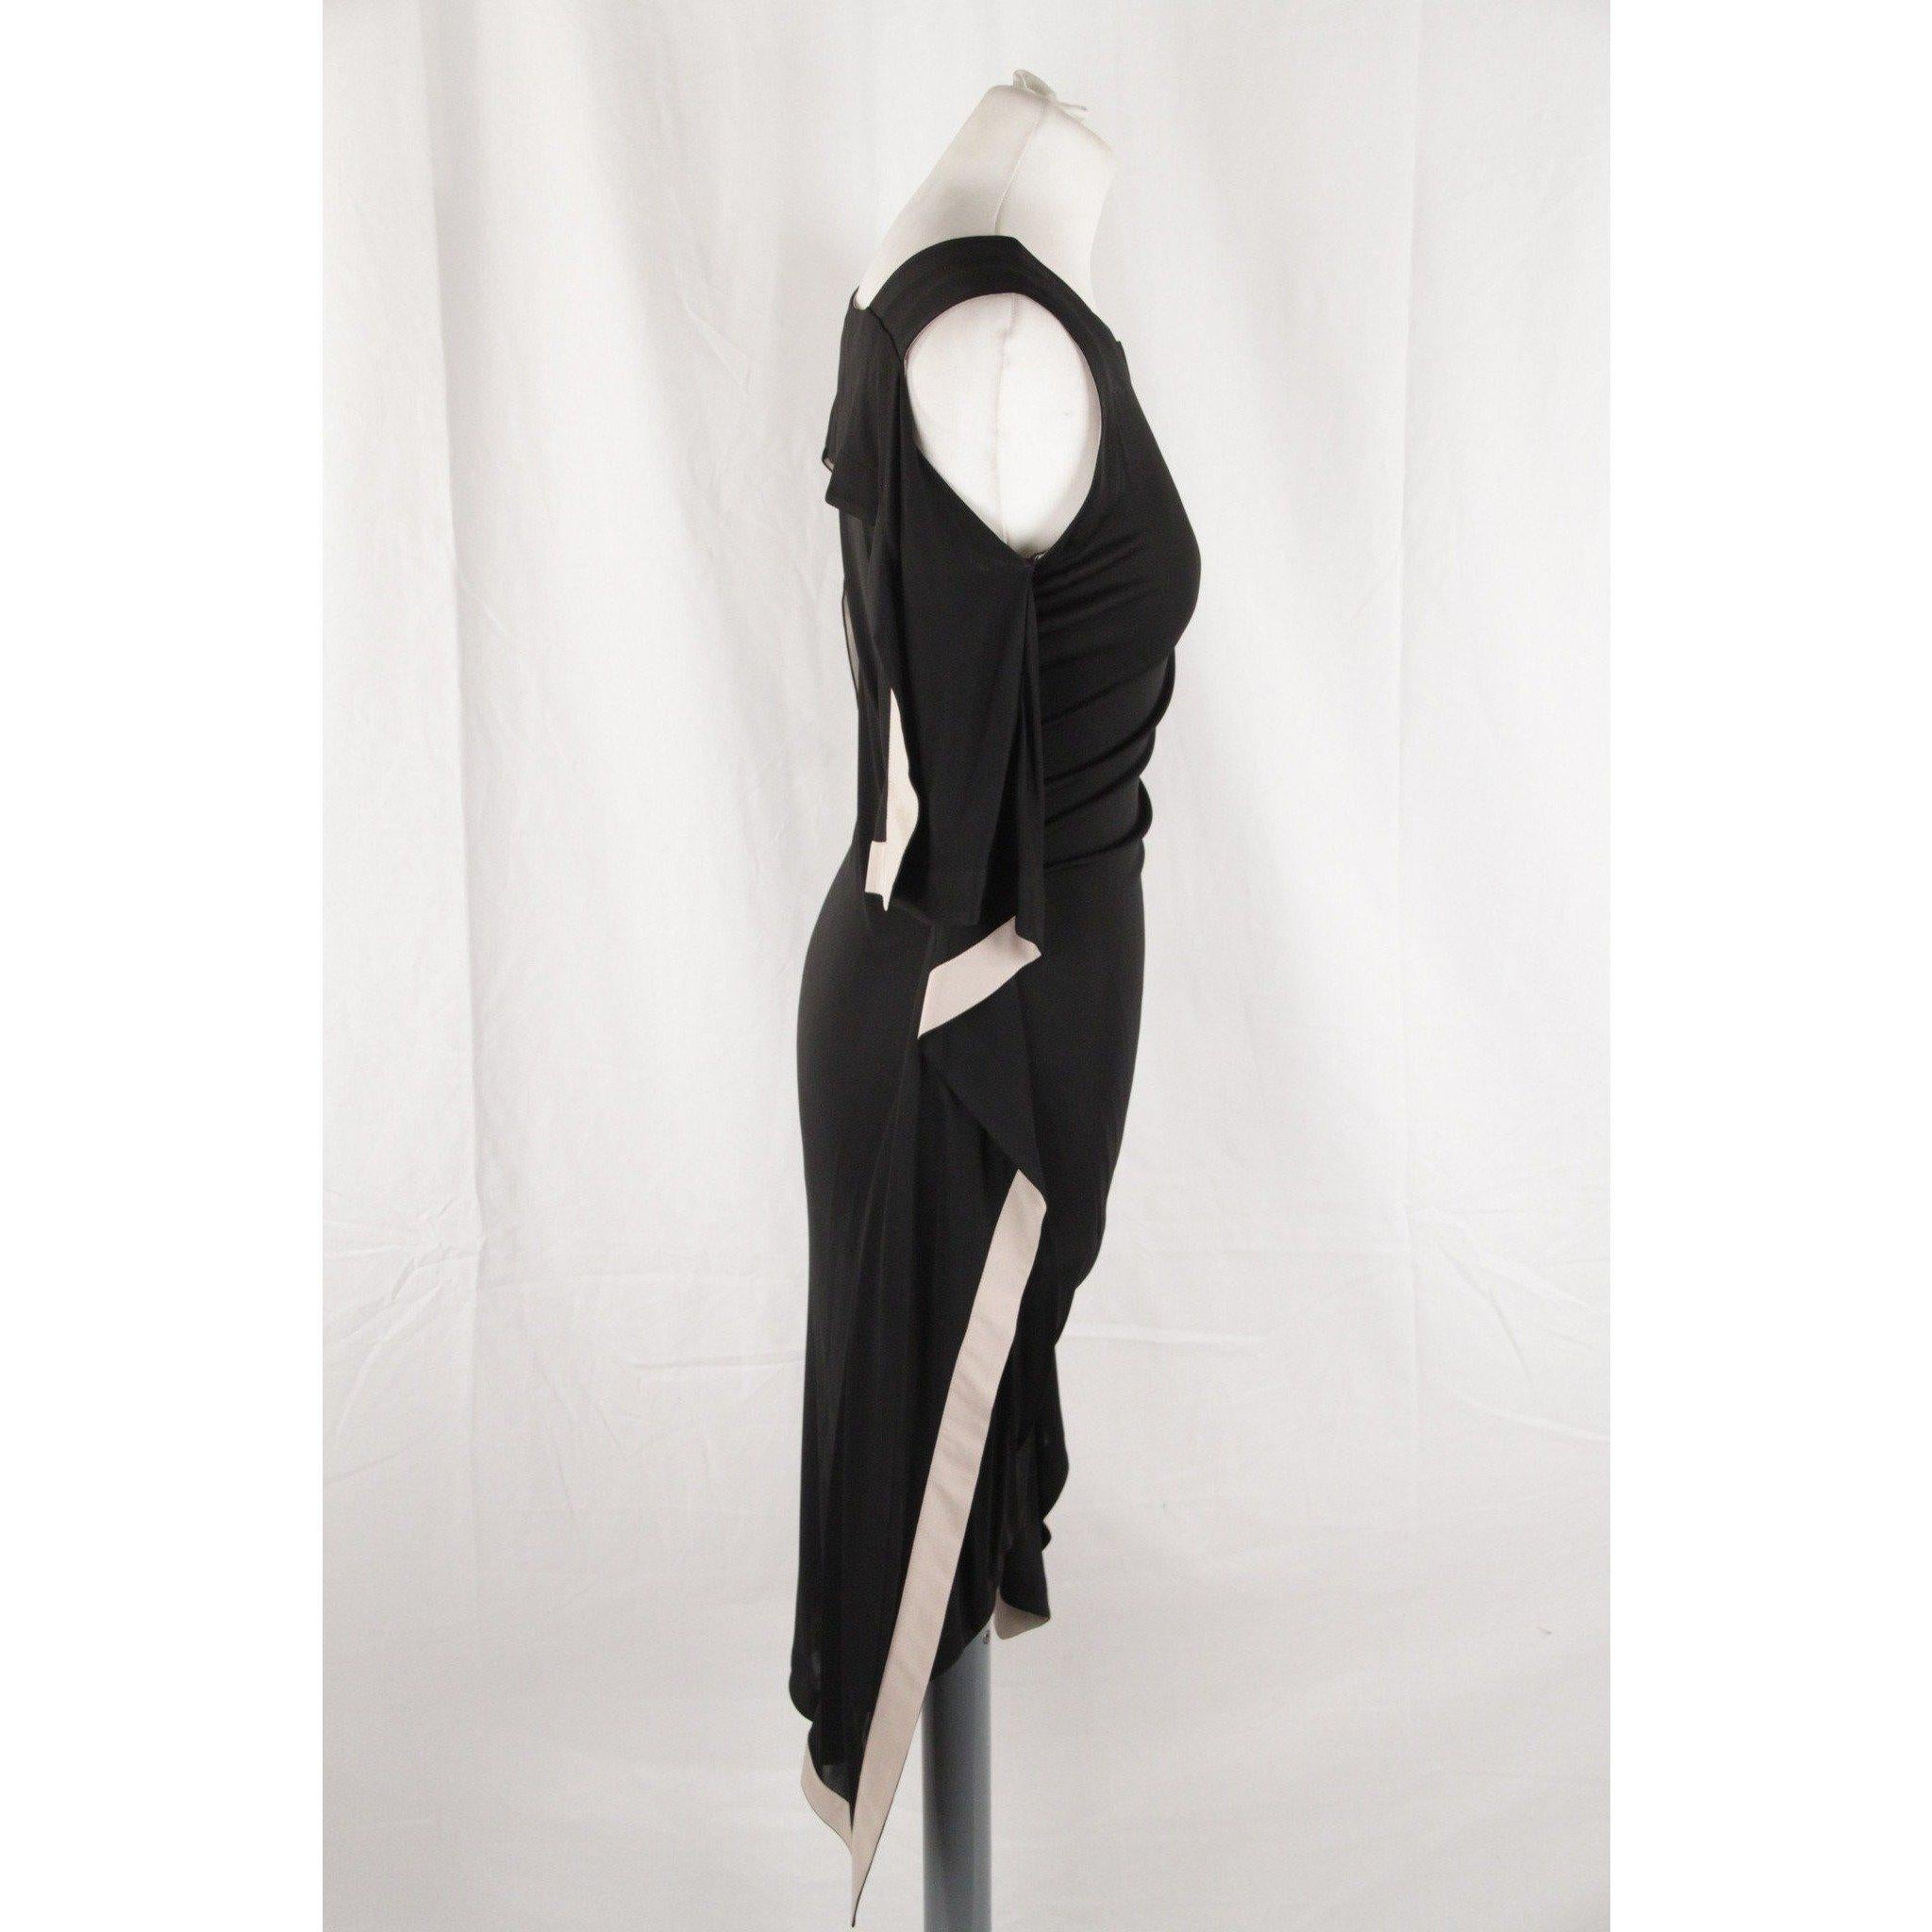 Vionnet Black Silky Sleeveless Dress Knee Lenght Size S 2